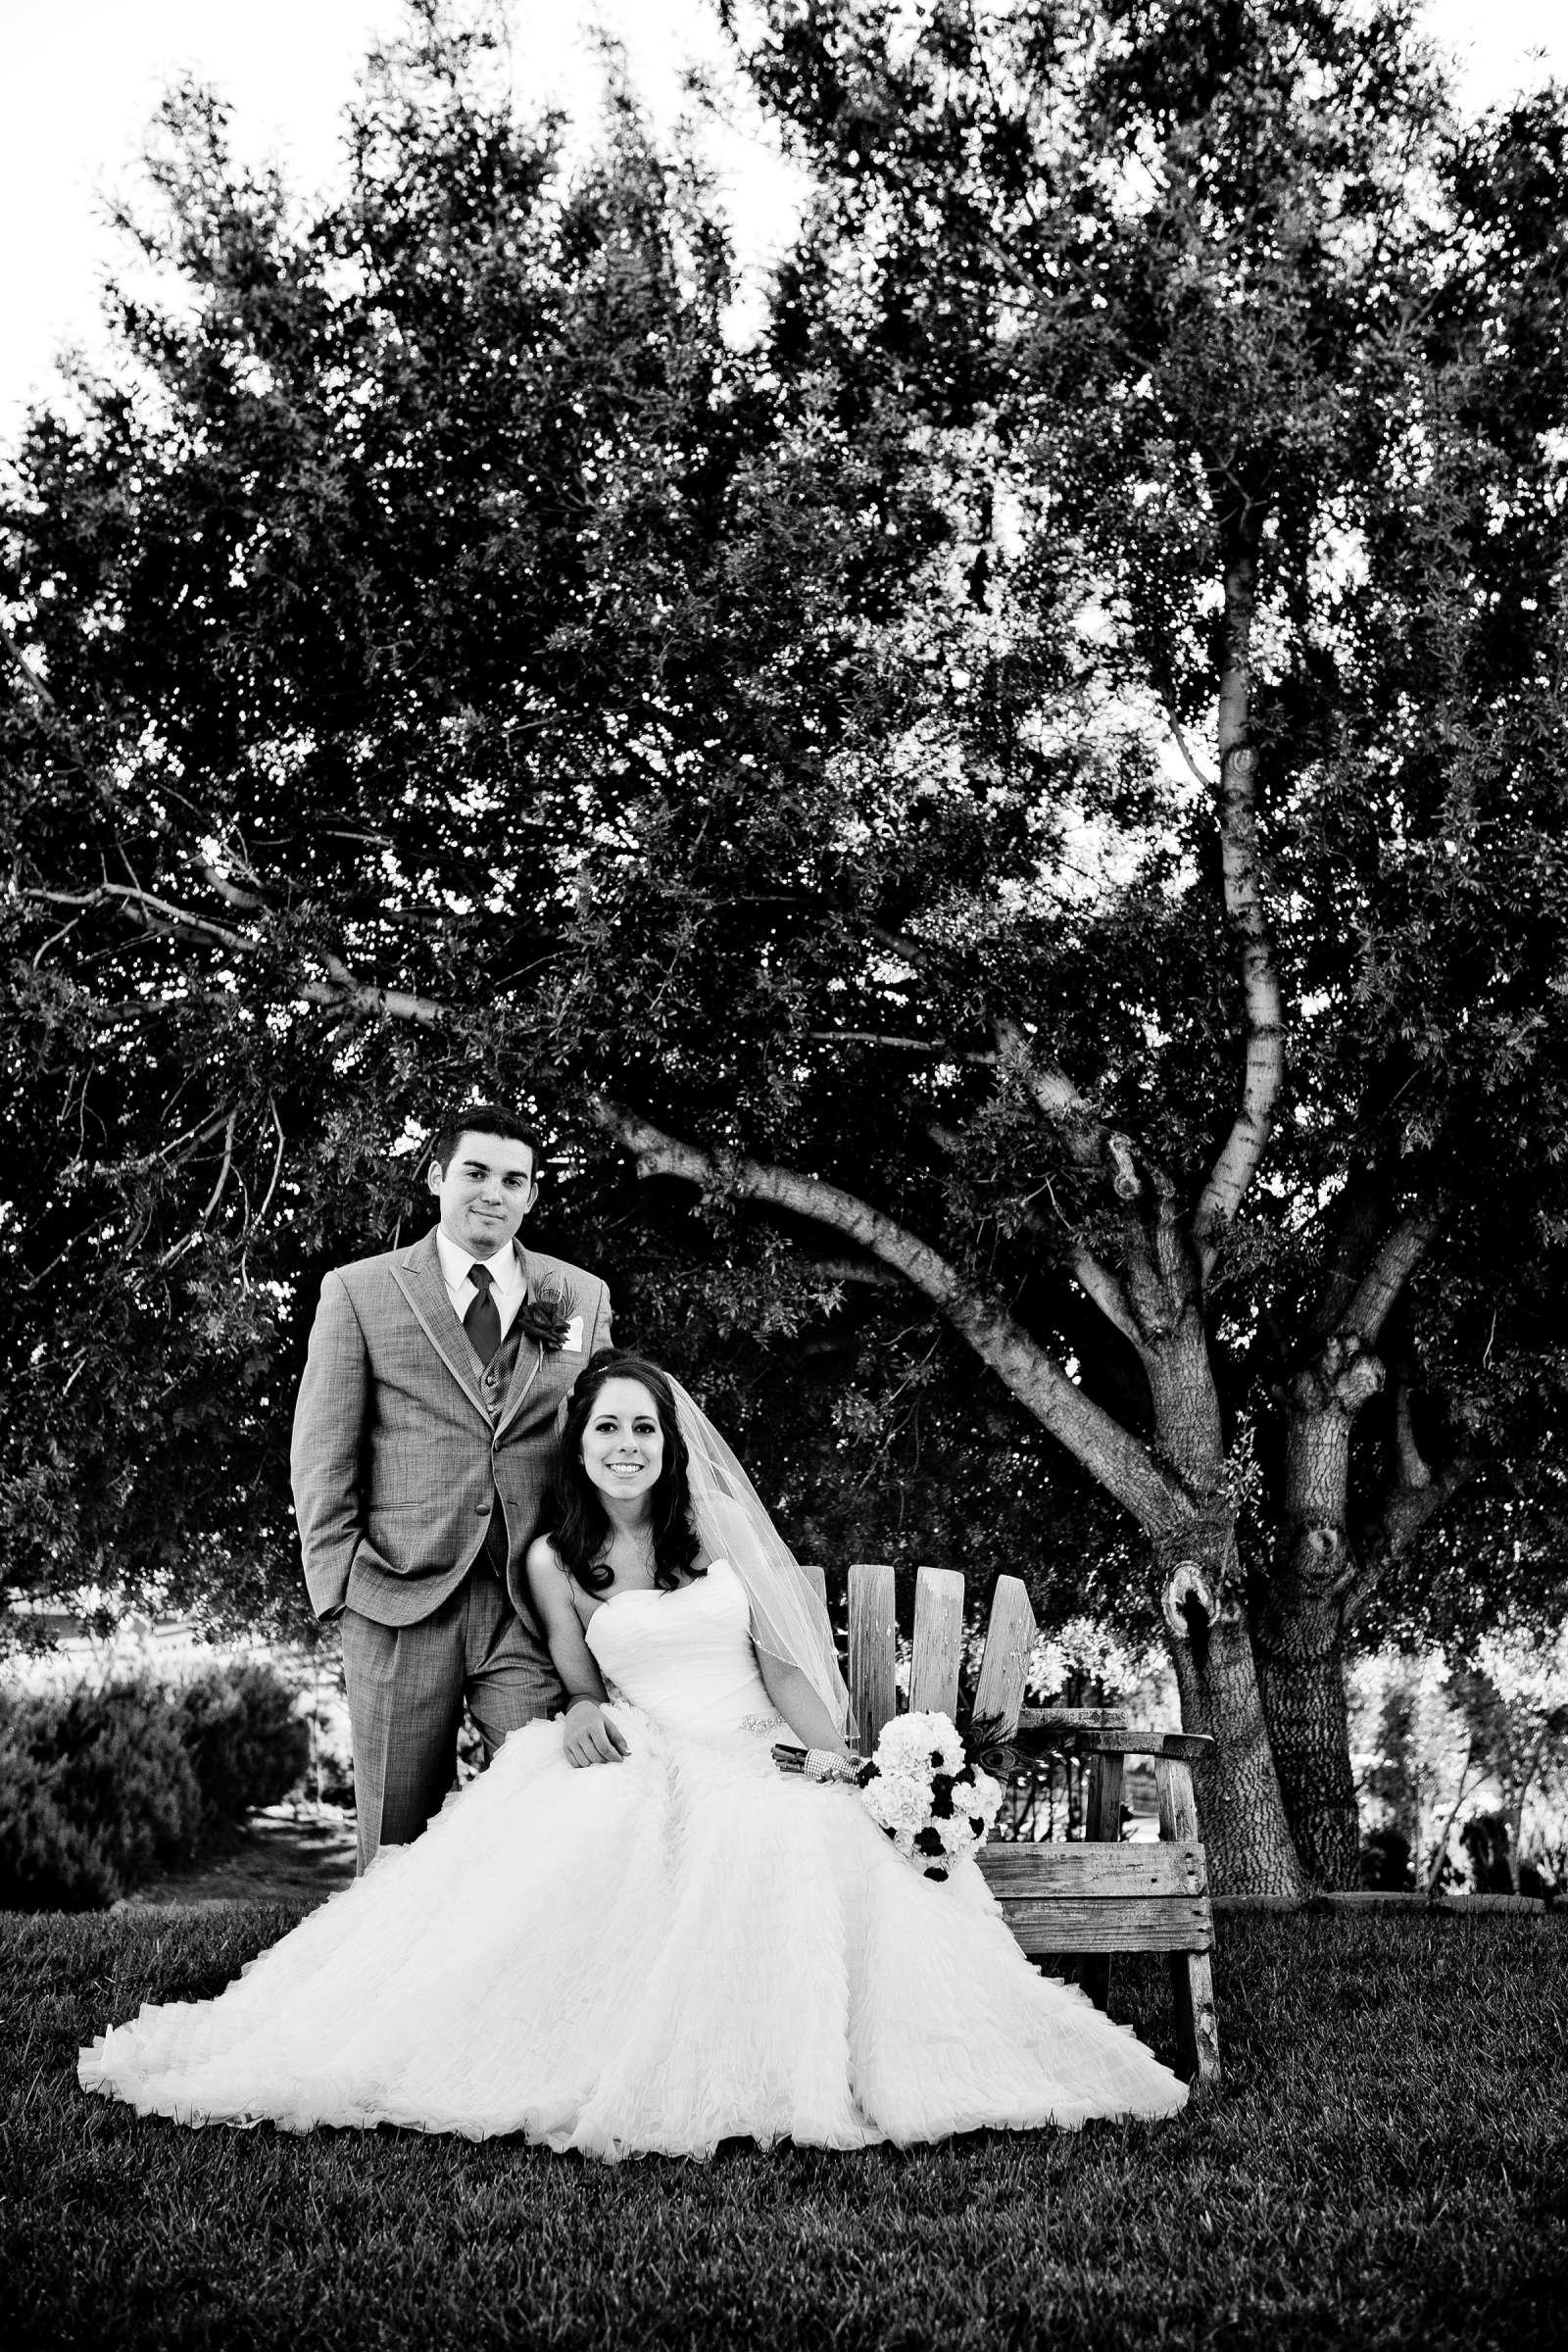 Mount Palomar Winery Wedding, Brandi and Jason Wedding Photo #321612 by True Photography